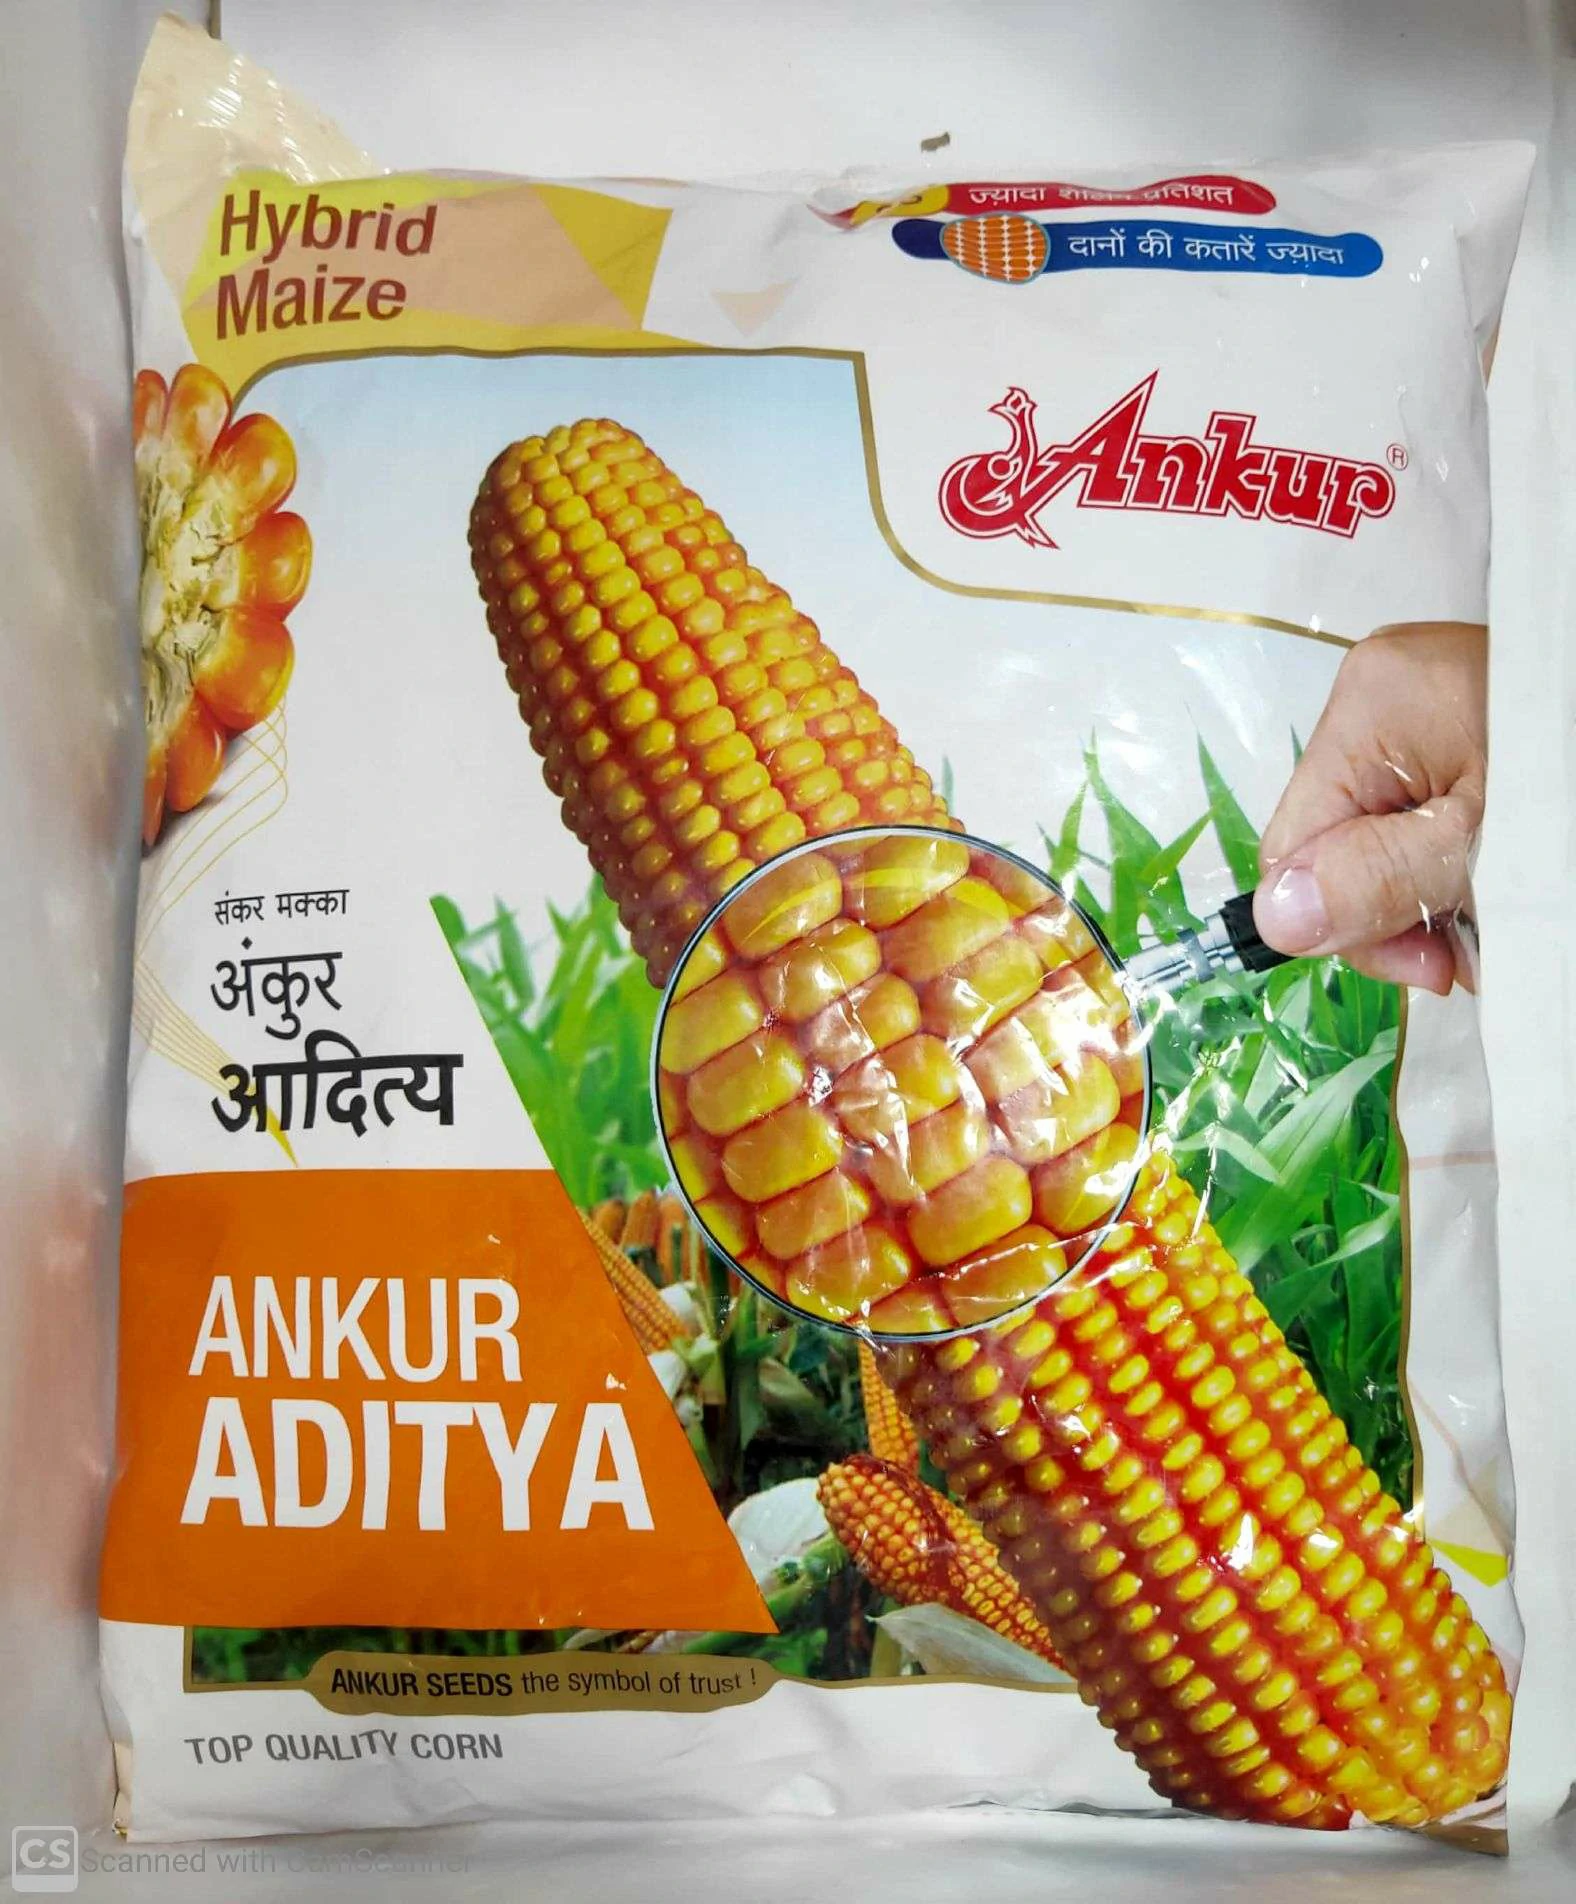 Maize Aditya Ankur seeds